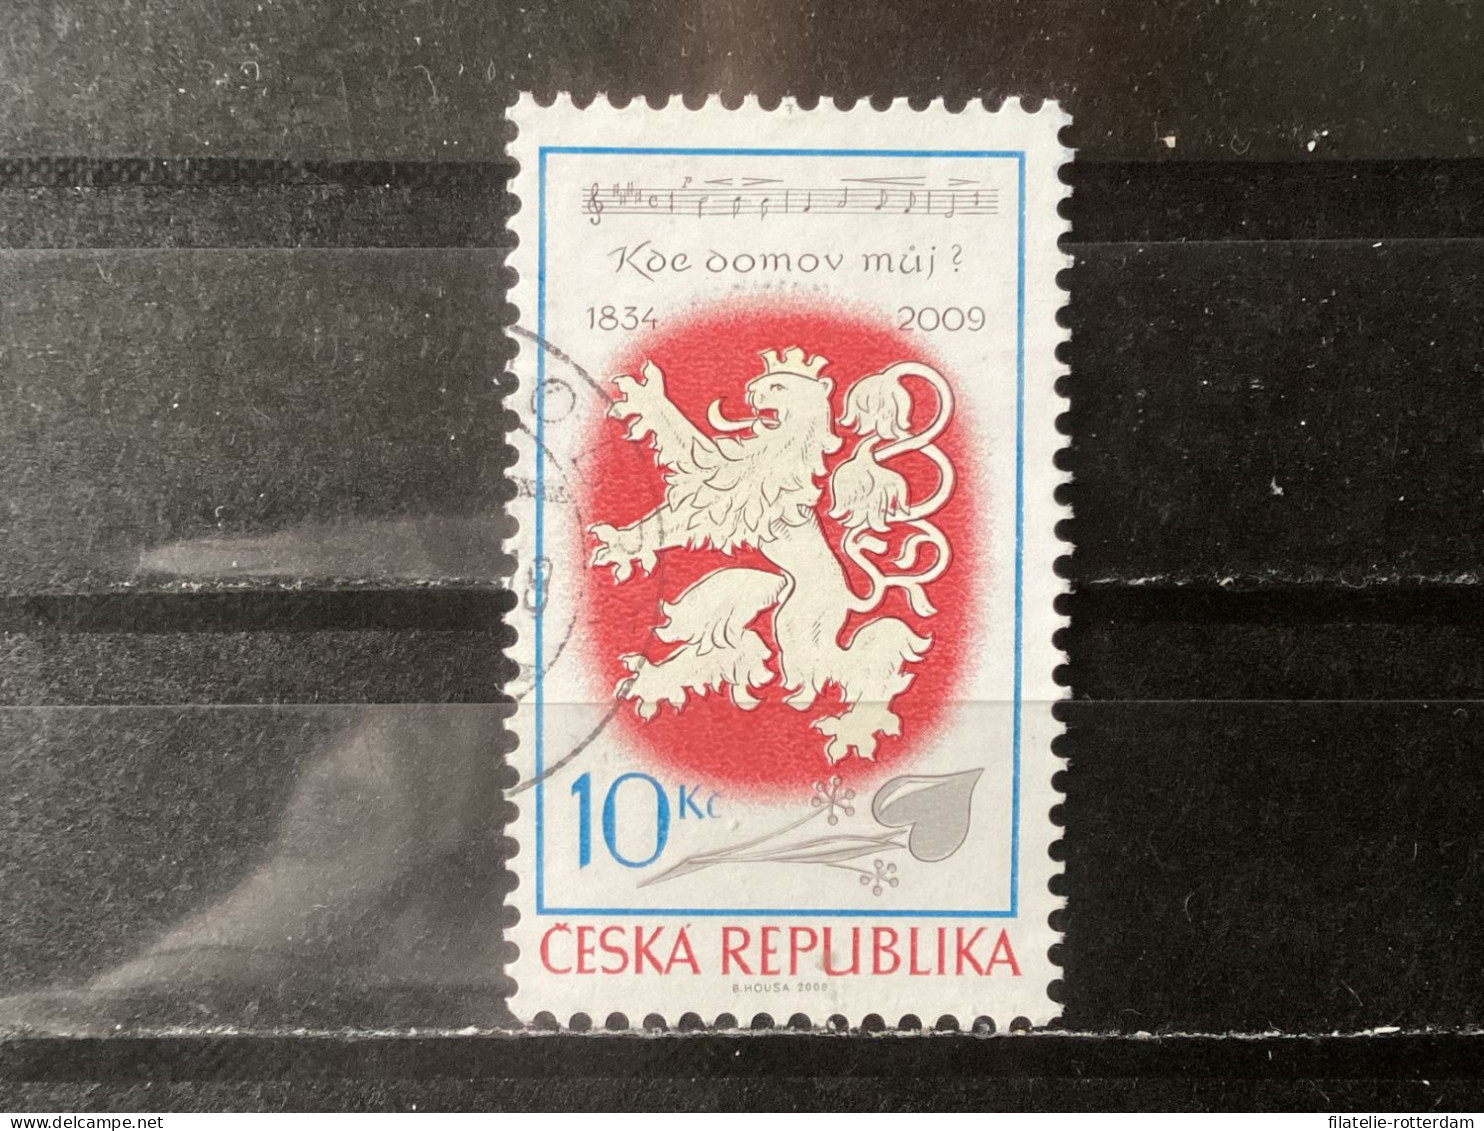 Czech Republic / Tsjechië - National Anthem (10) 2009 - Used Stamps